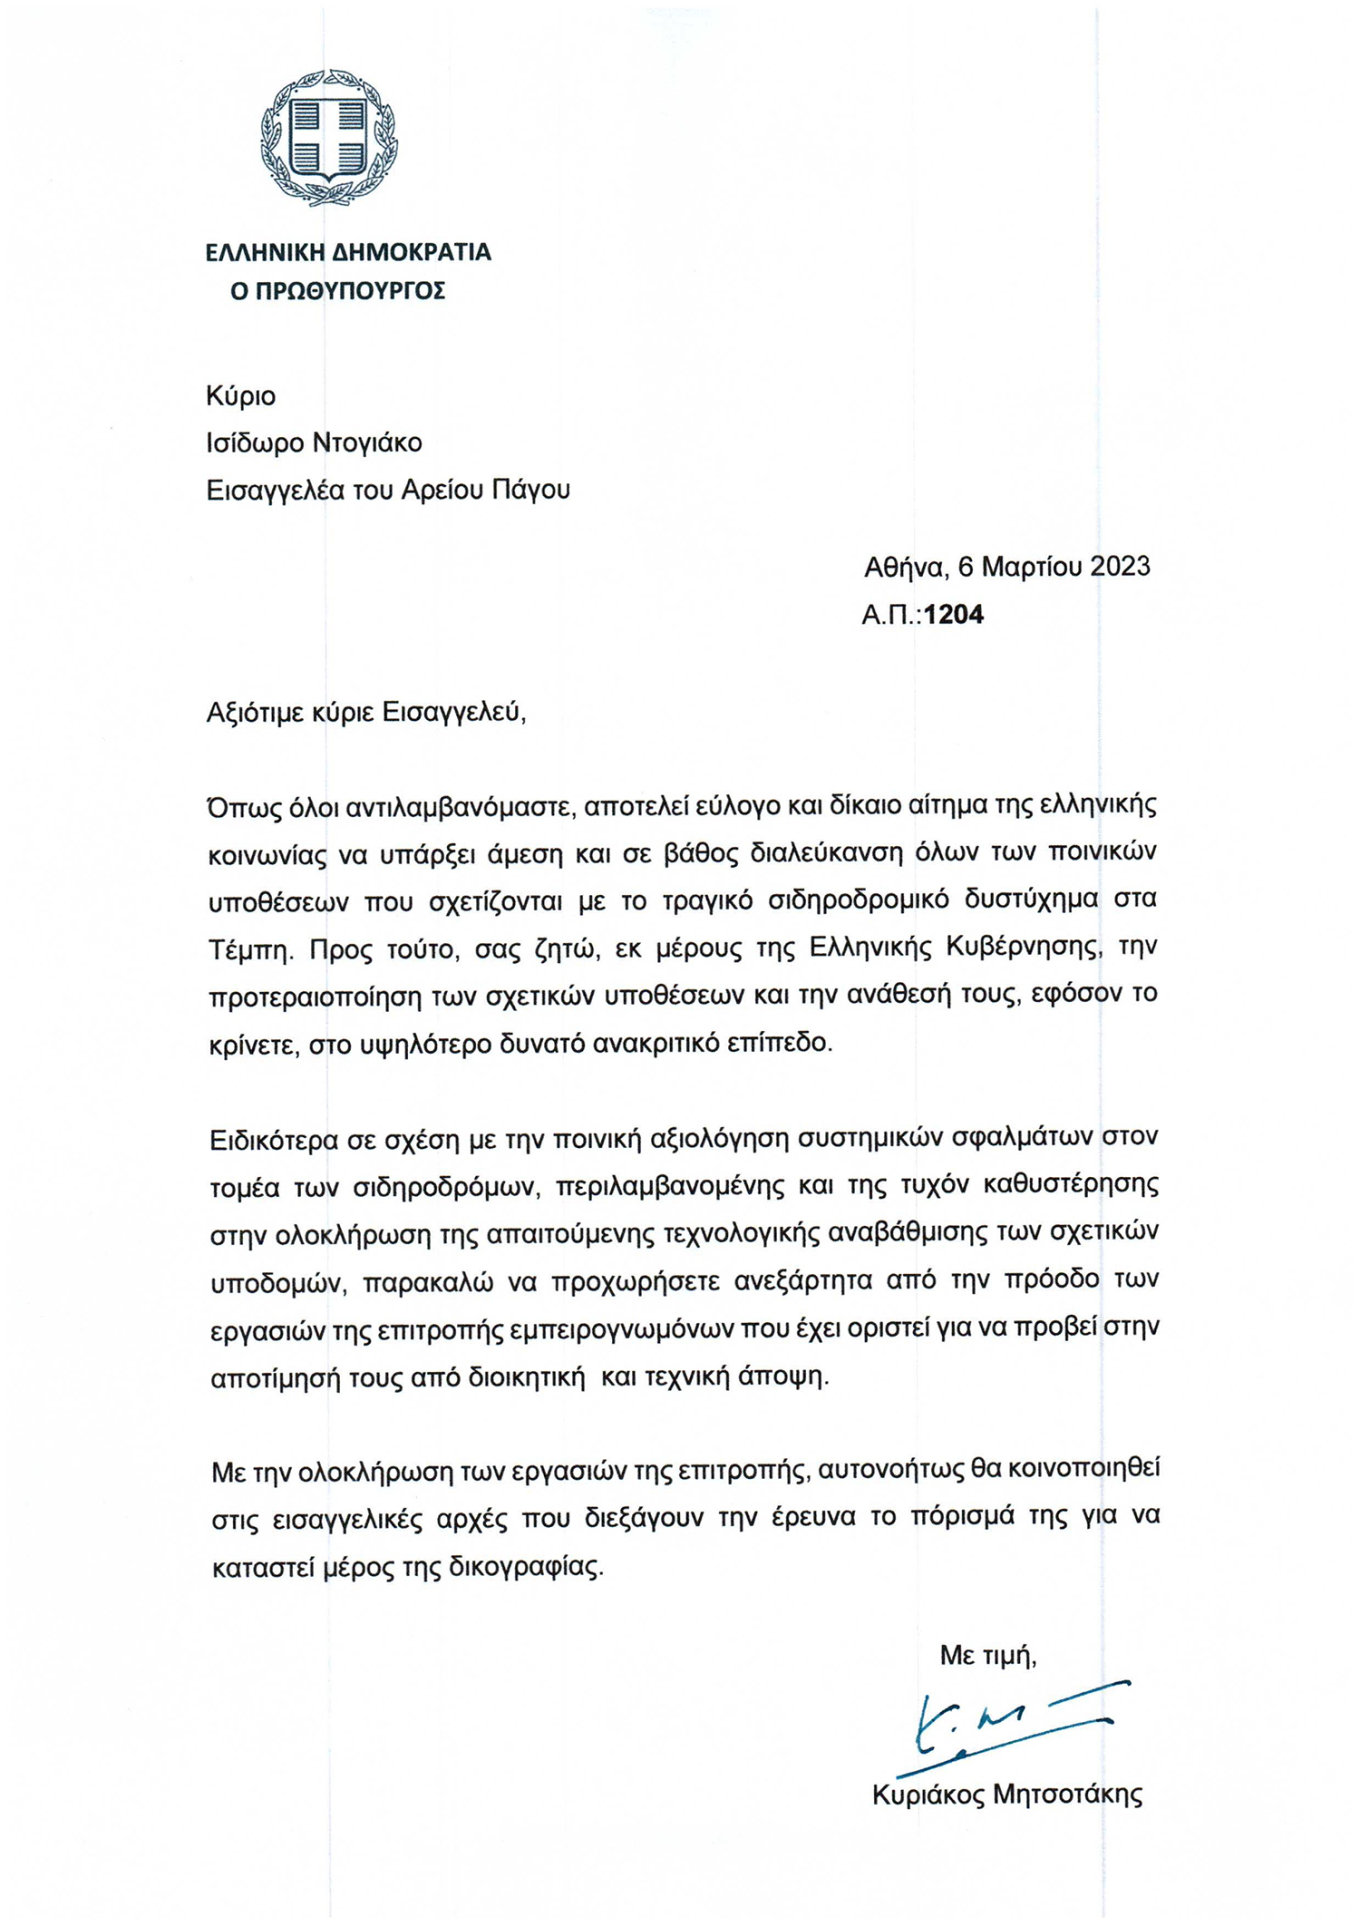 Επιστολή στον εισαγγελέα του Αρείου Πάγου, Ισίδωρο Ντογιάκο, έστειλε σήμερα ο Κυριάκος Μητσοτάκης.   Ο Πρωθυπουργός με την επιστολή του ζητά την προτεραιοποίηση των σχετικών υποθέσεων όσον αφορά τη σύγκρουση των τρένων στα Τέμπη και την ανάθεσή τους «στο υψηλότερο δυνατό ανακριτικό επίπεδο».  Ακόμα, ο Κυριάκος Μητσοτάκης επισημαίνει προς τον Ισίδωρο Ντογιάκο για την ποινική αξιολόγηση σφαλμάτων στον τομέα των σιδηροδρόμων «περιλαμβανομένης και της τυχόν καθυστέρηηση στην ολοκλήρωση της απαιτούμενης τεχνολογ